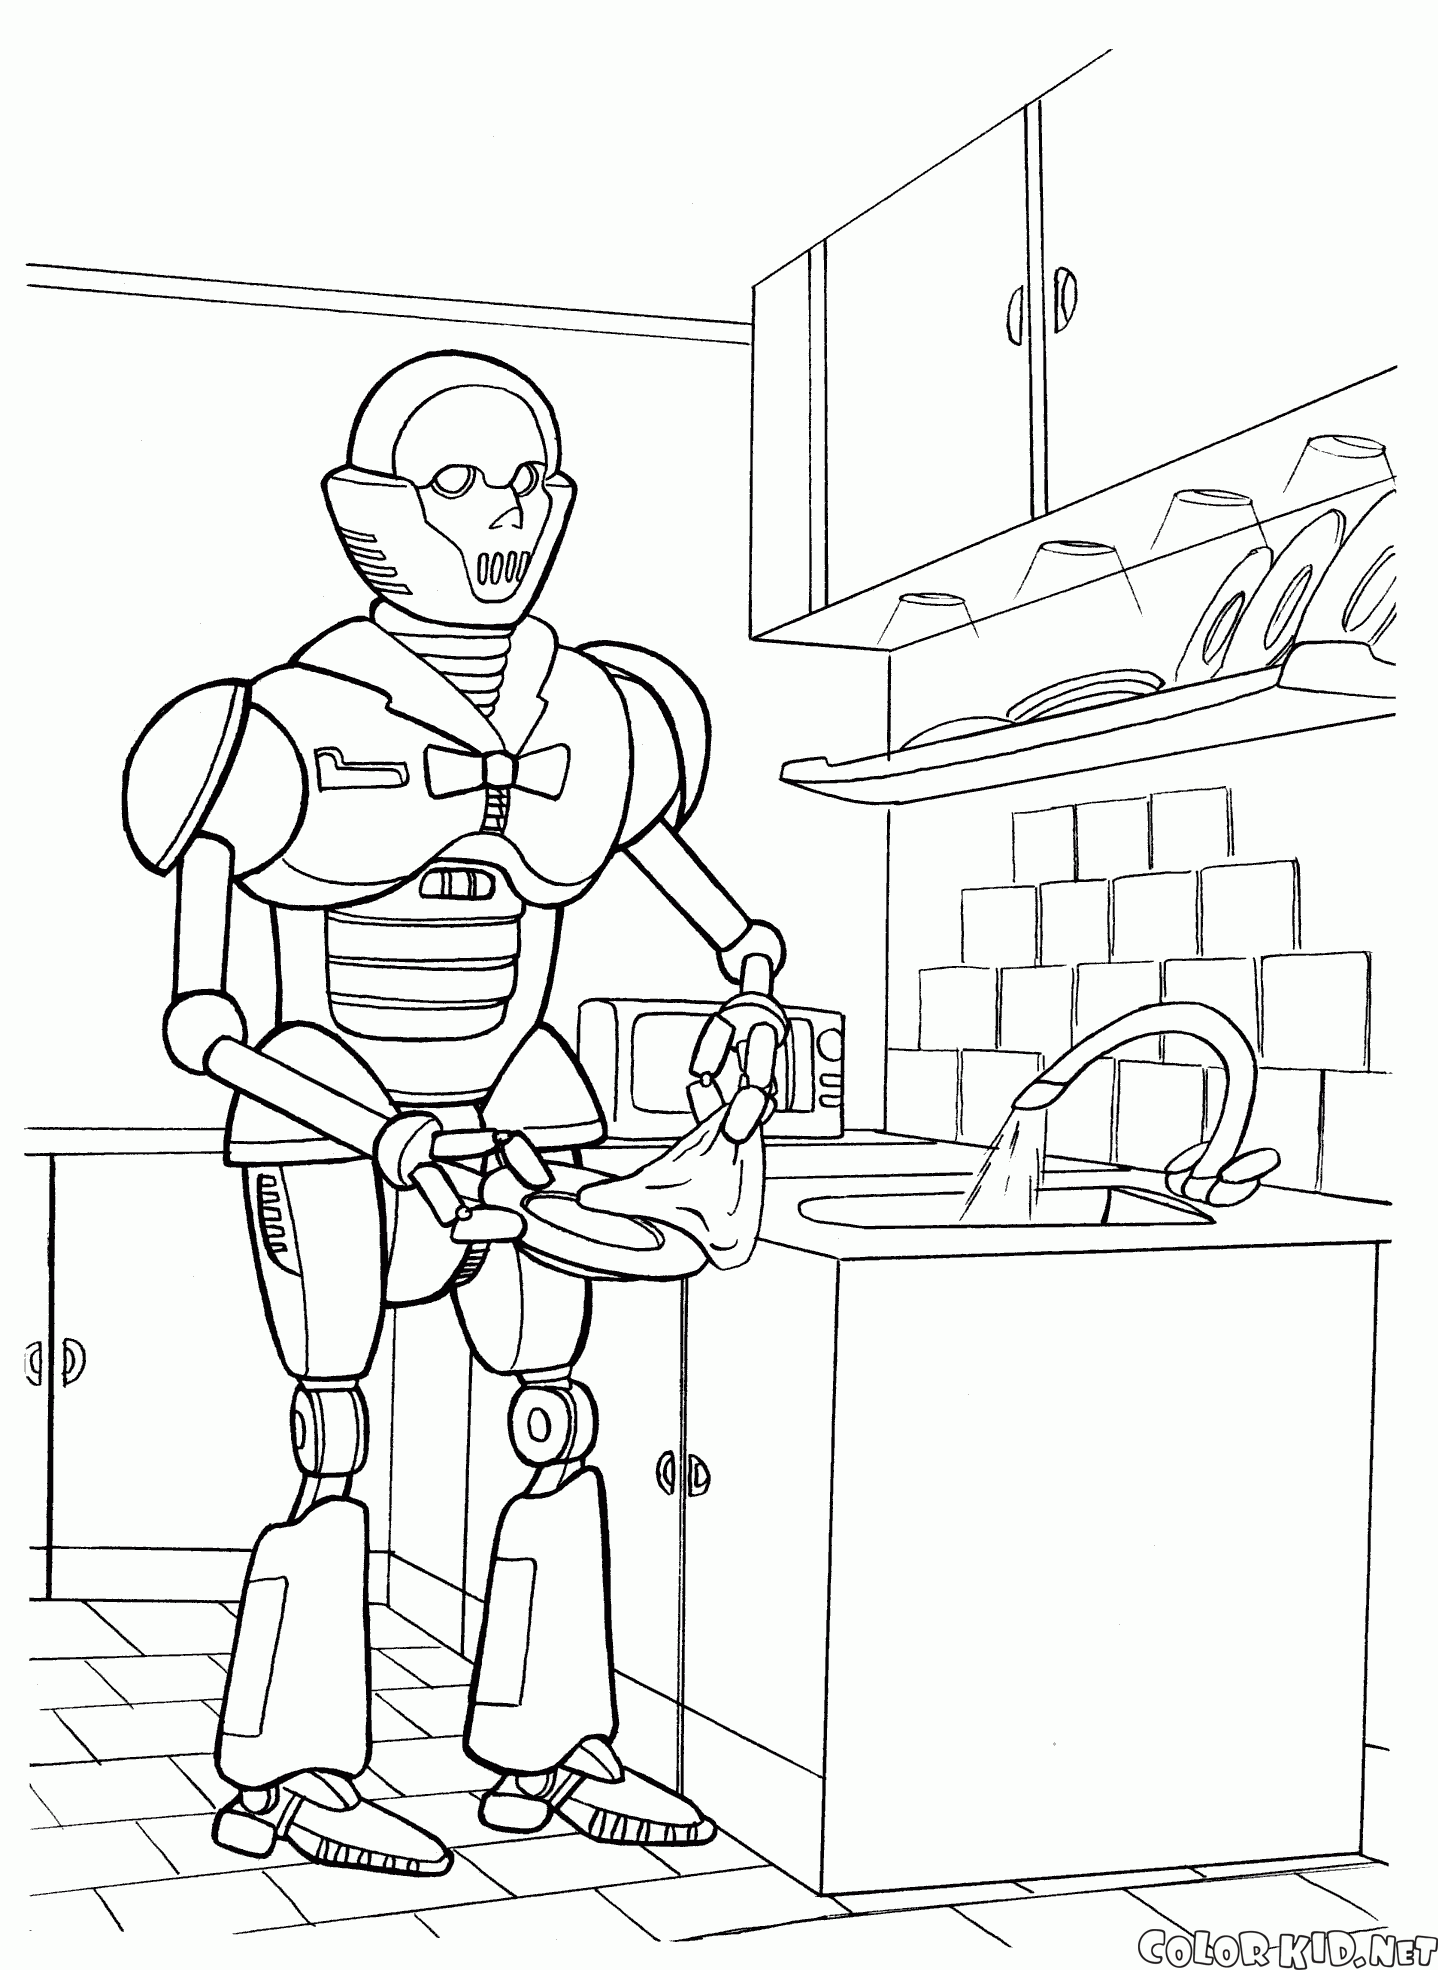 キッチンロボット